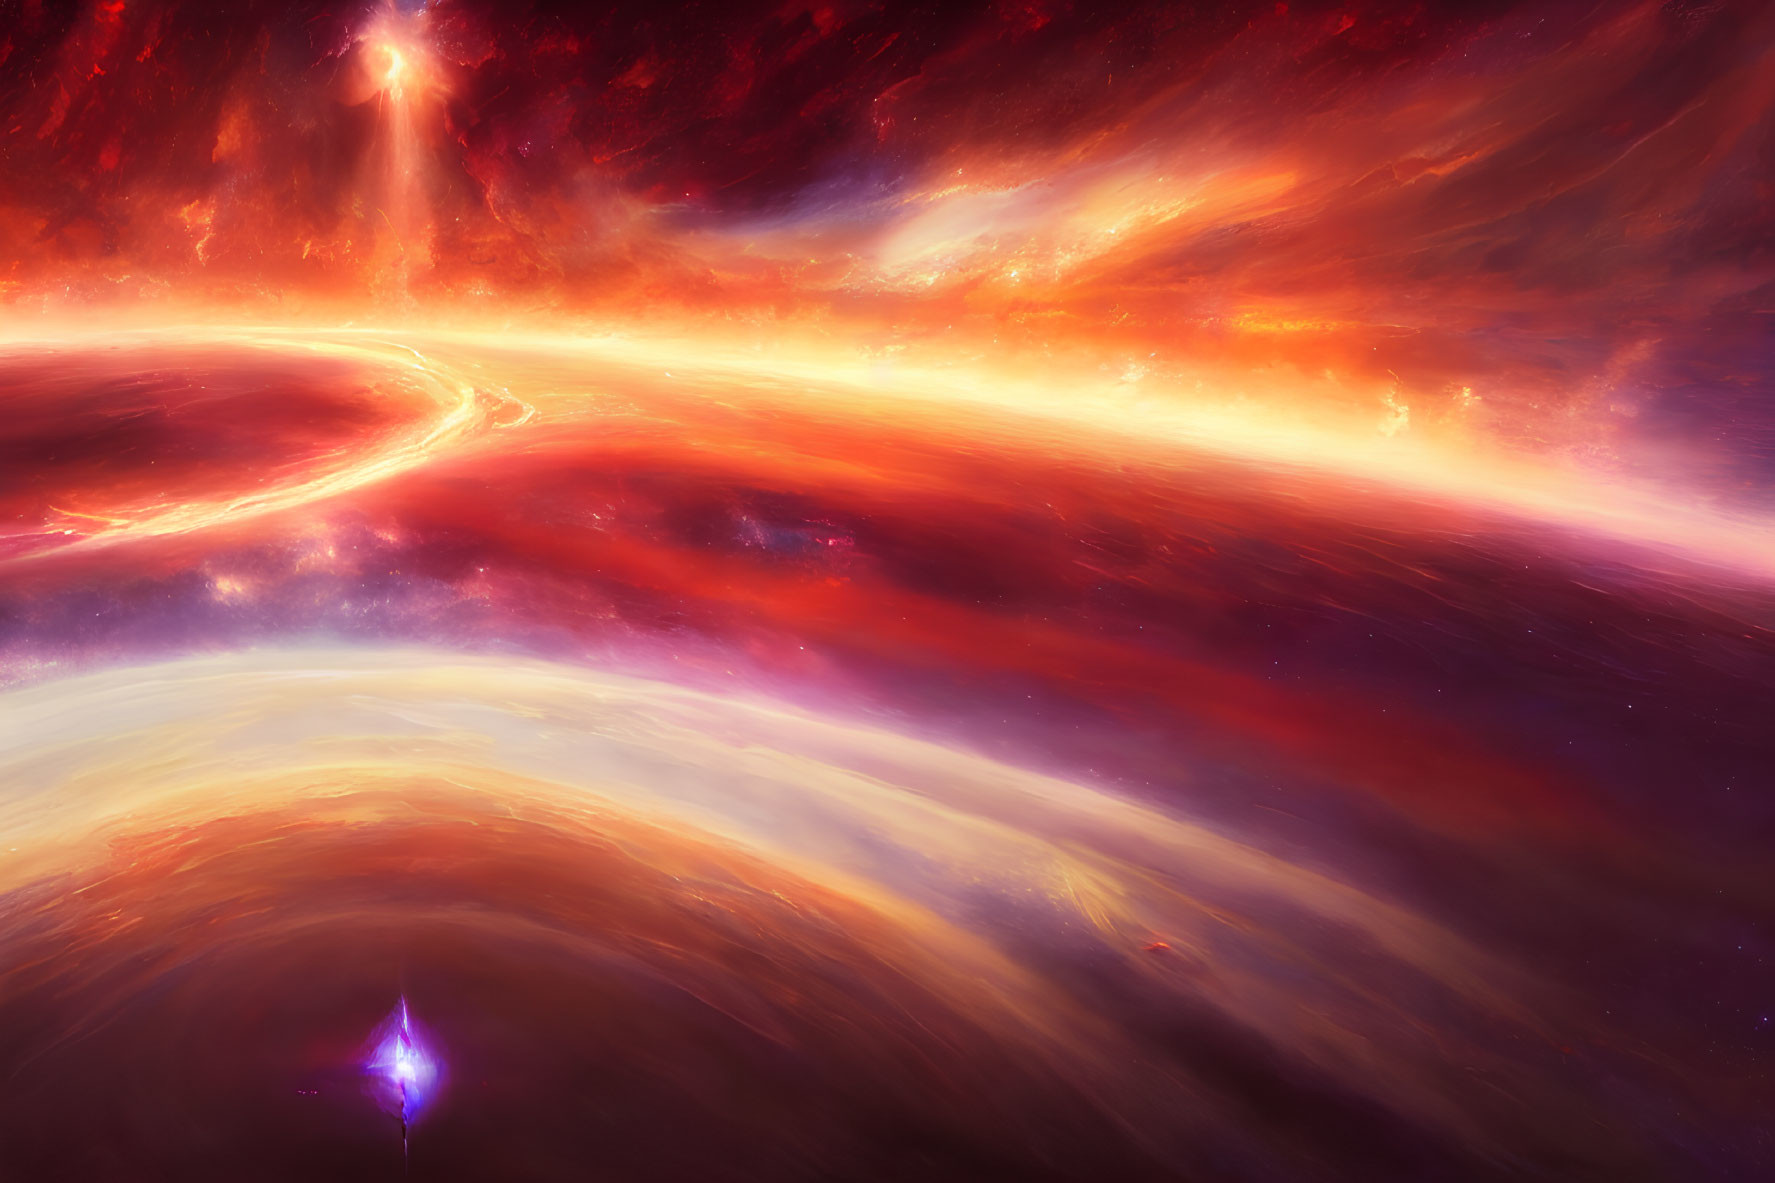 Swirling Cosmic Colors in Vibrant Space Scene